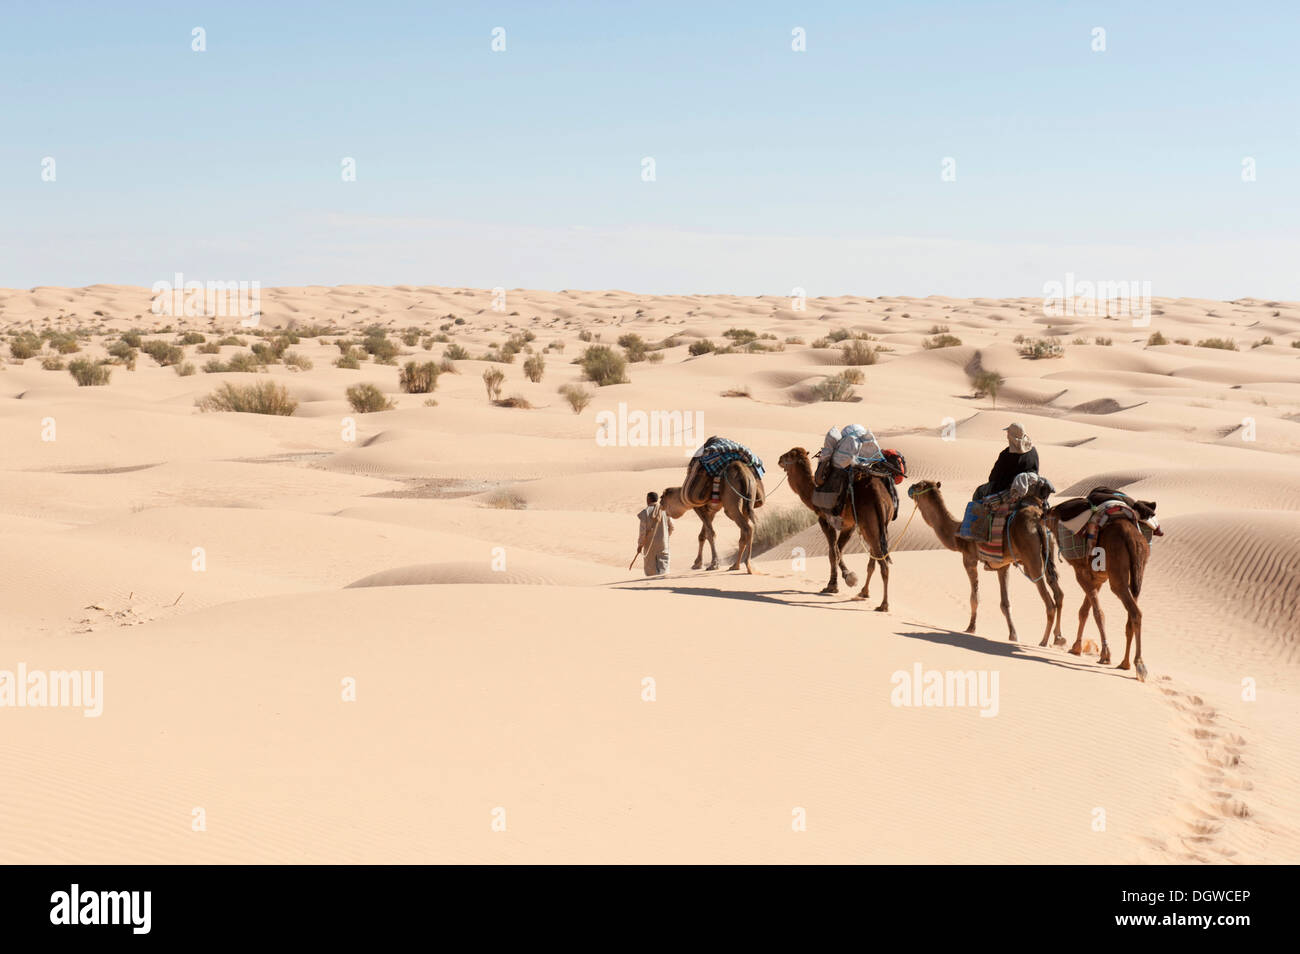 Sustainable tourism, camel trekking, camels, dromedaries (Camelus dromedarius), sand dunes, Sahara desert between Douz and Ksar Stock Photo